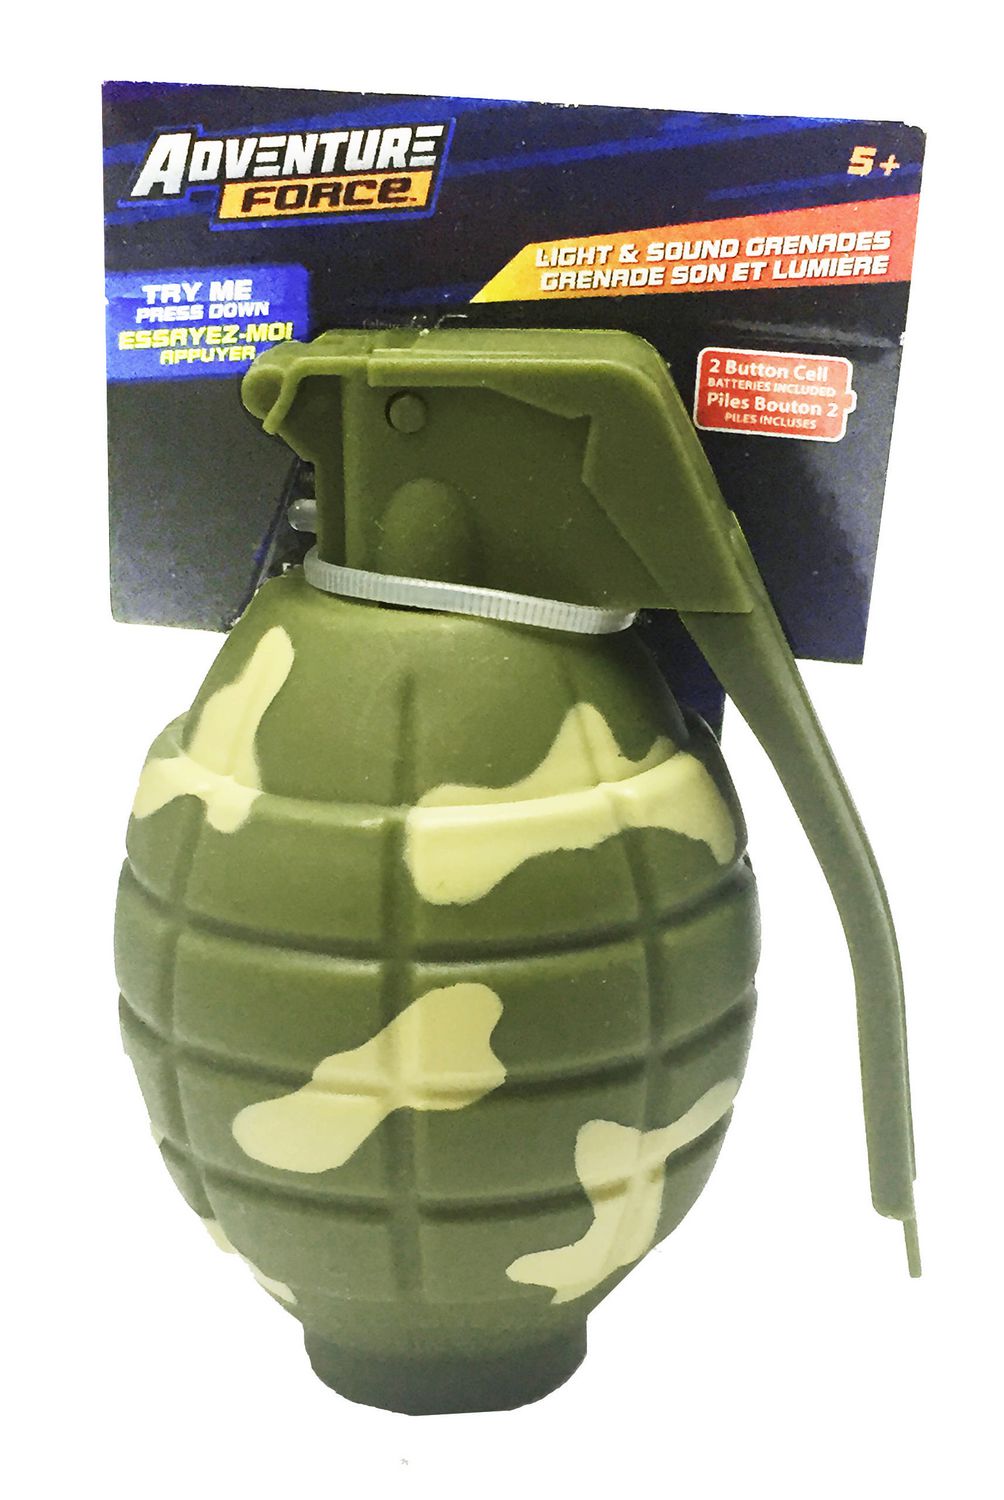 Grenade jouet pour enfants,Simulation de grenades sonores et